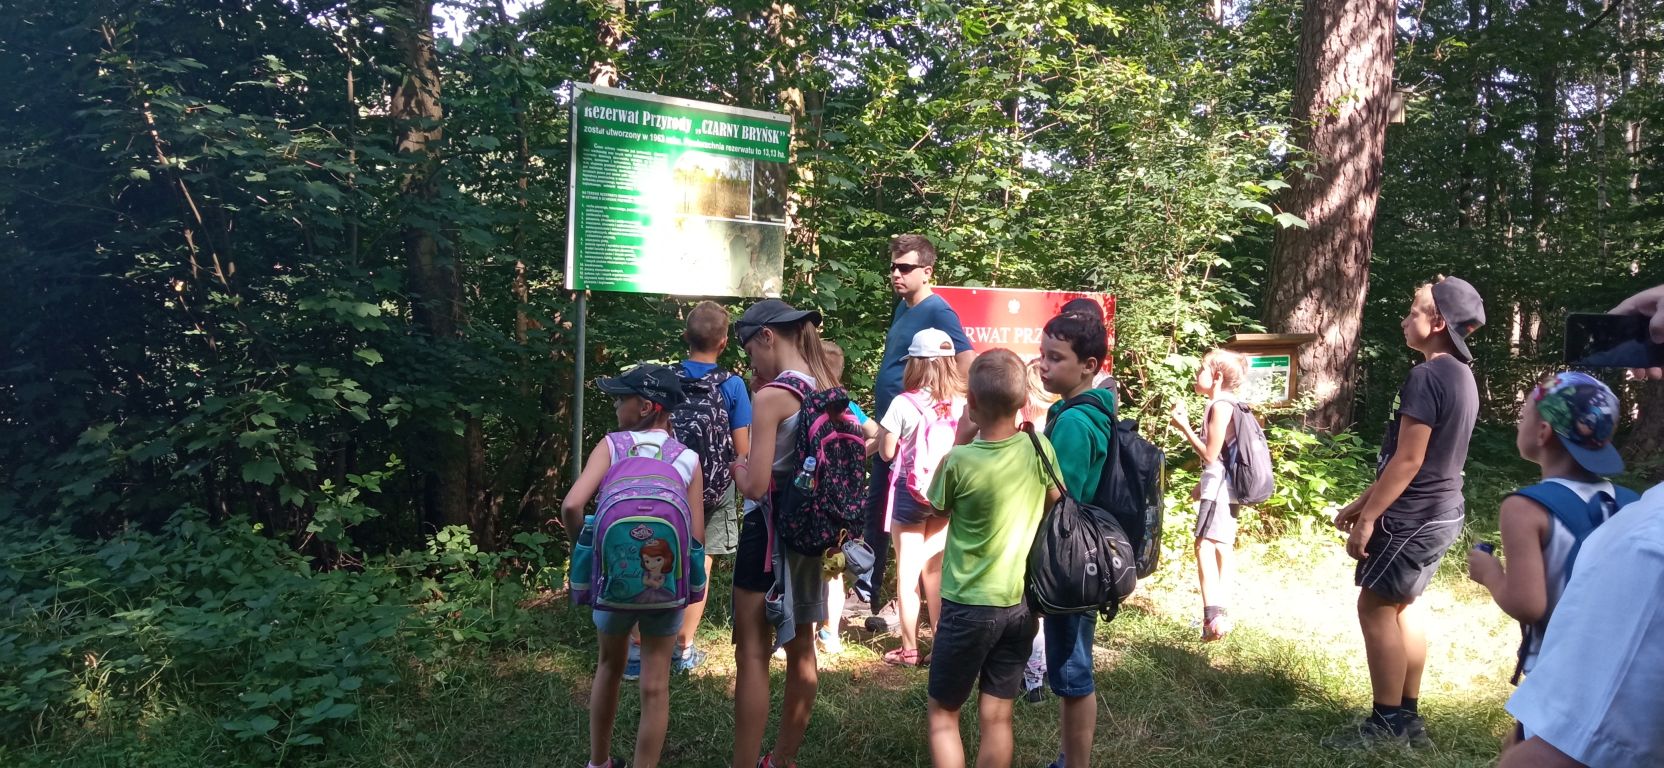 Fotografia przedstawia uczestników zajęć z przewodnikiem stojących na terenie rezerwatu przyrody Czarny Bryńsk. Dzieci słuchają wypowiedzi przewodnika na temat rezerwatu